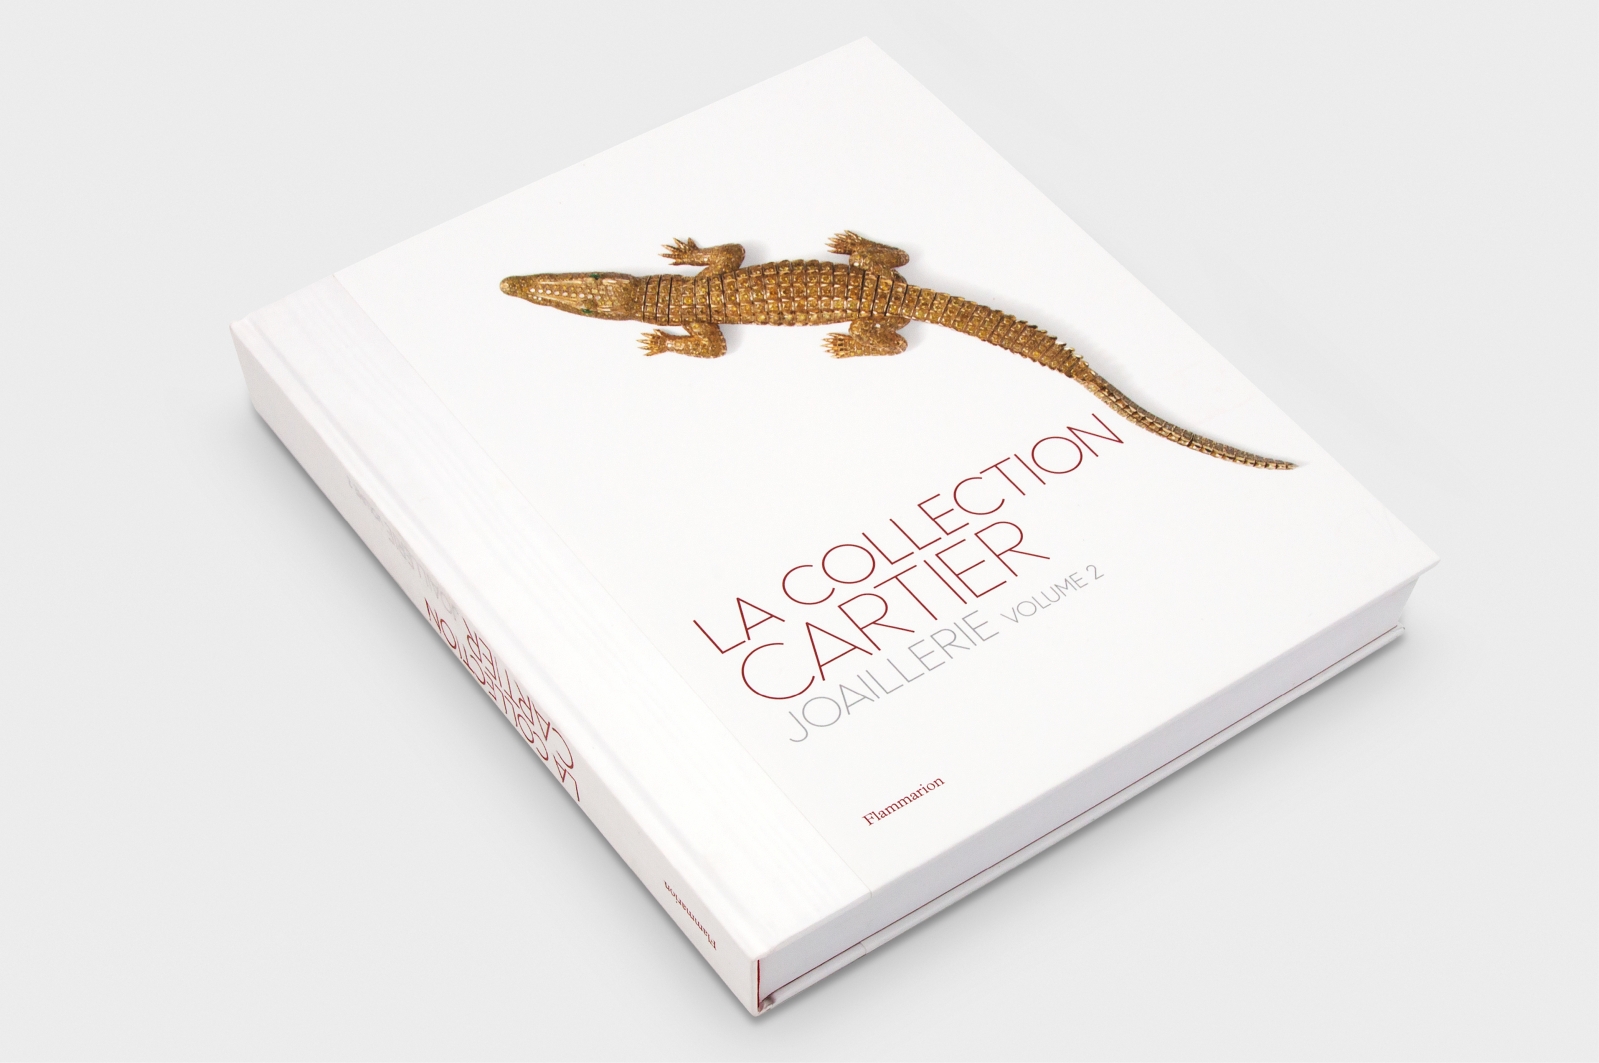 La Collection Cartier Joaillerie Volumes 1 et 2